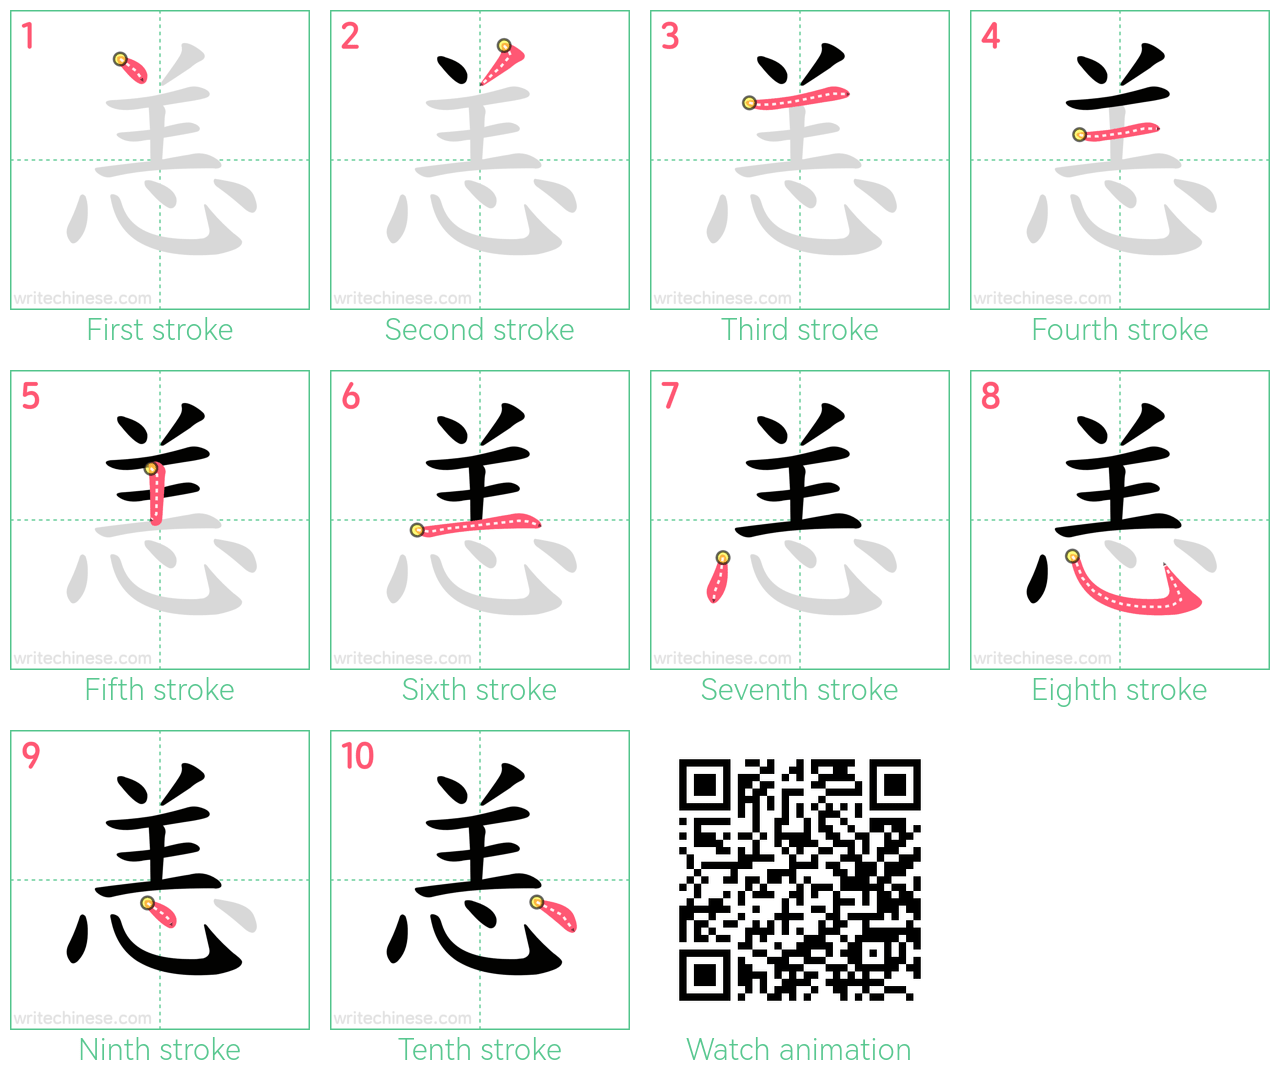 恙 step-by-step stroke order diagrams